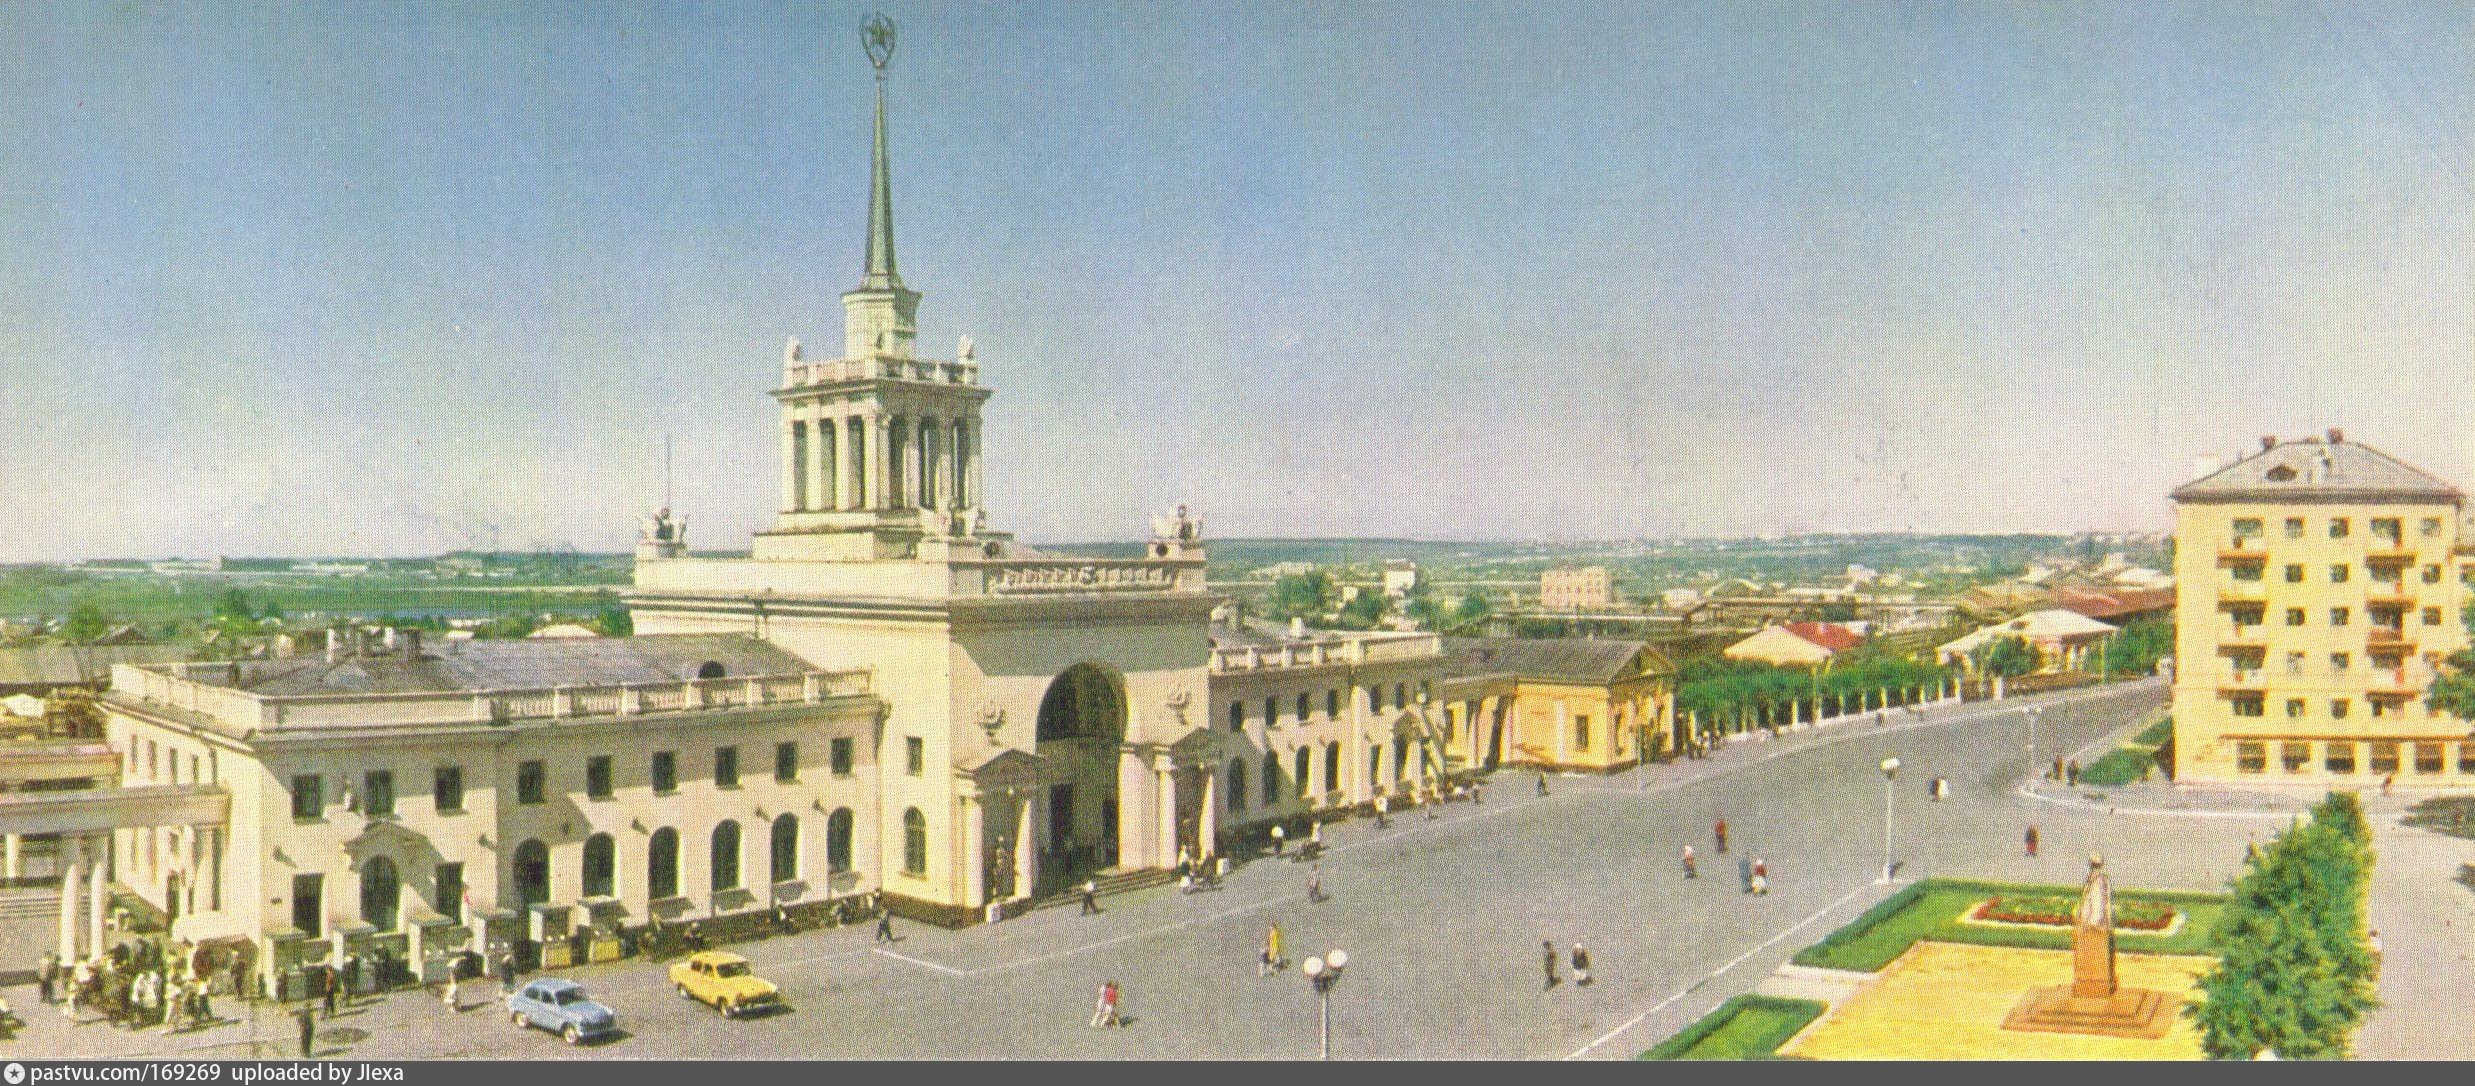 старый вокзал ульяновск